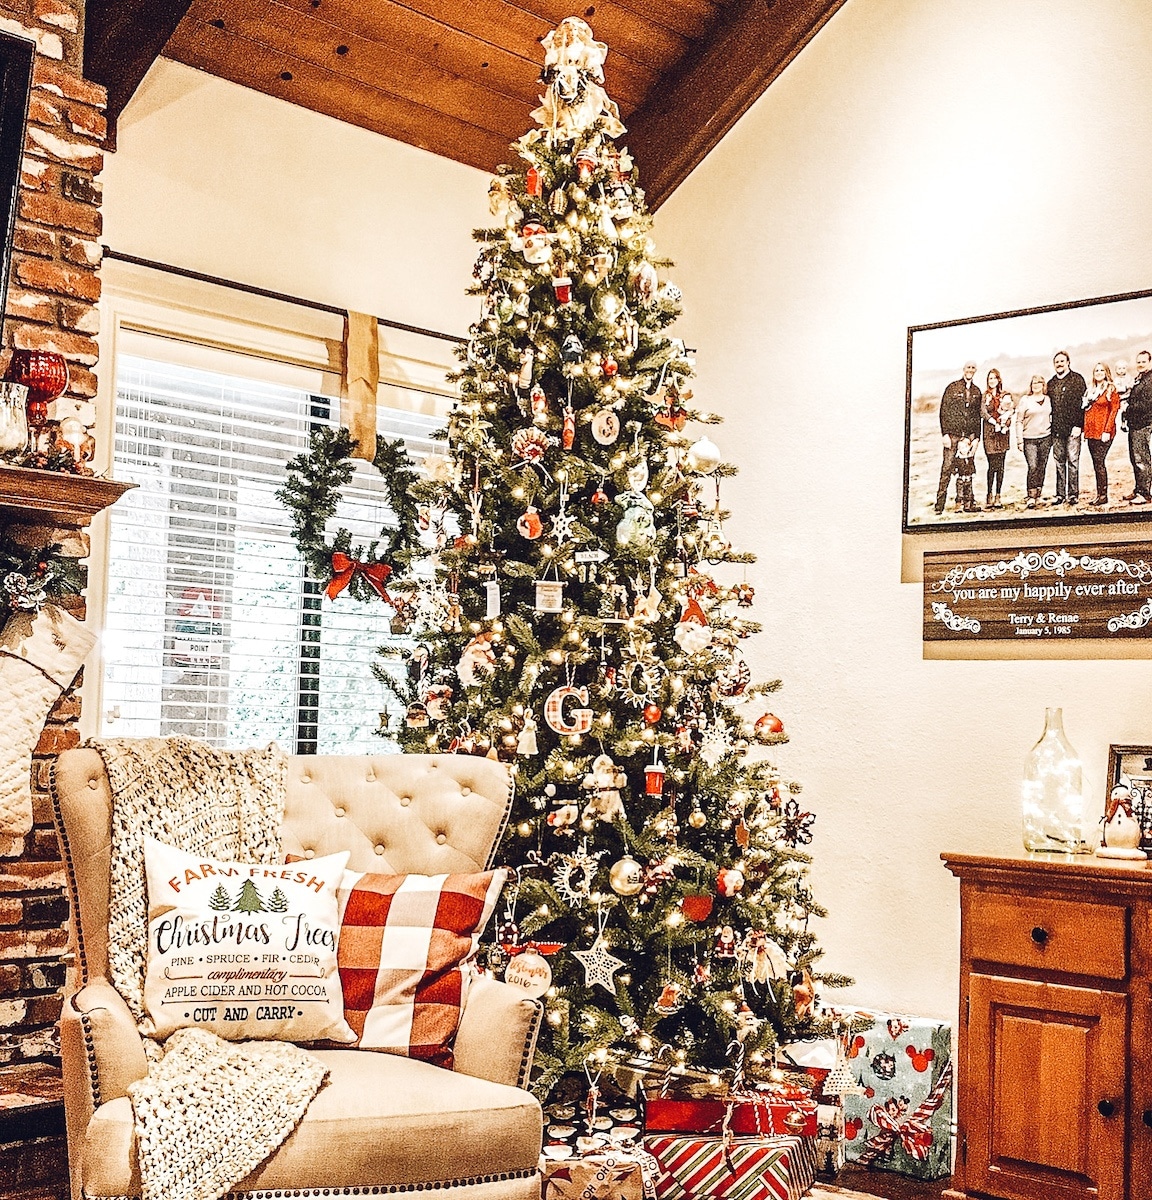 Christmas Decor - Christmas tree